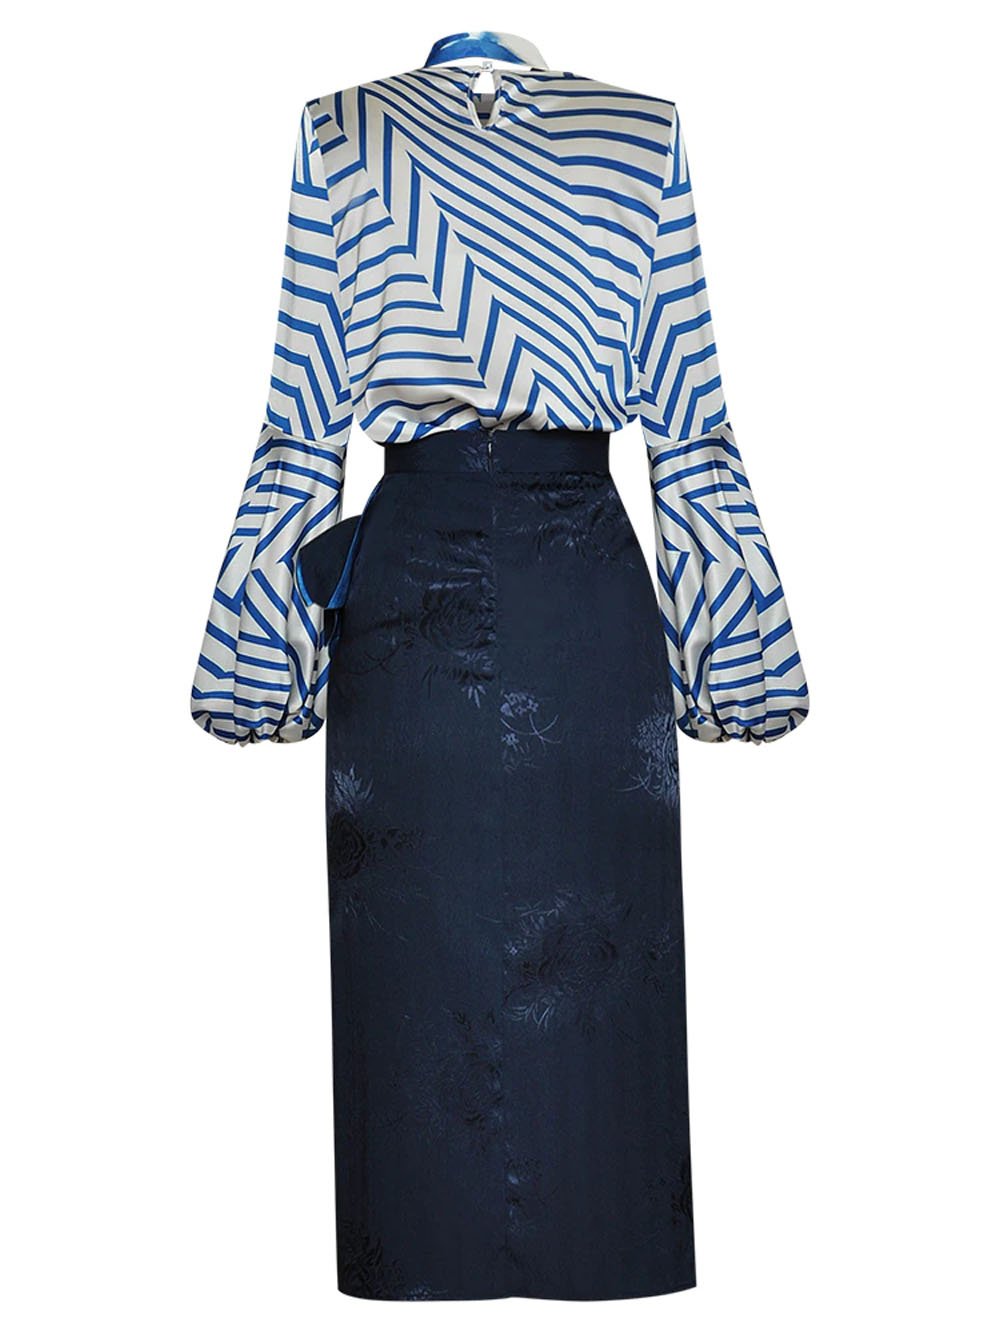 VALERE Stripe Top & Skirt Set